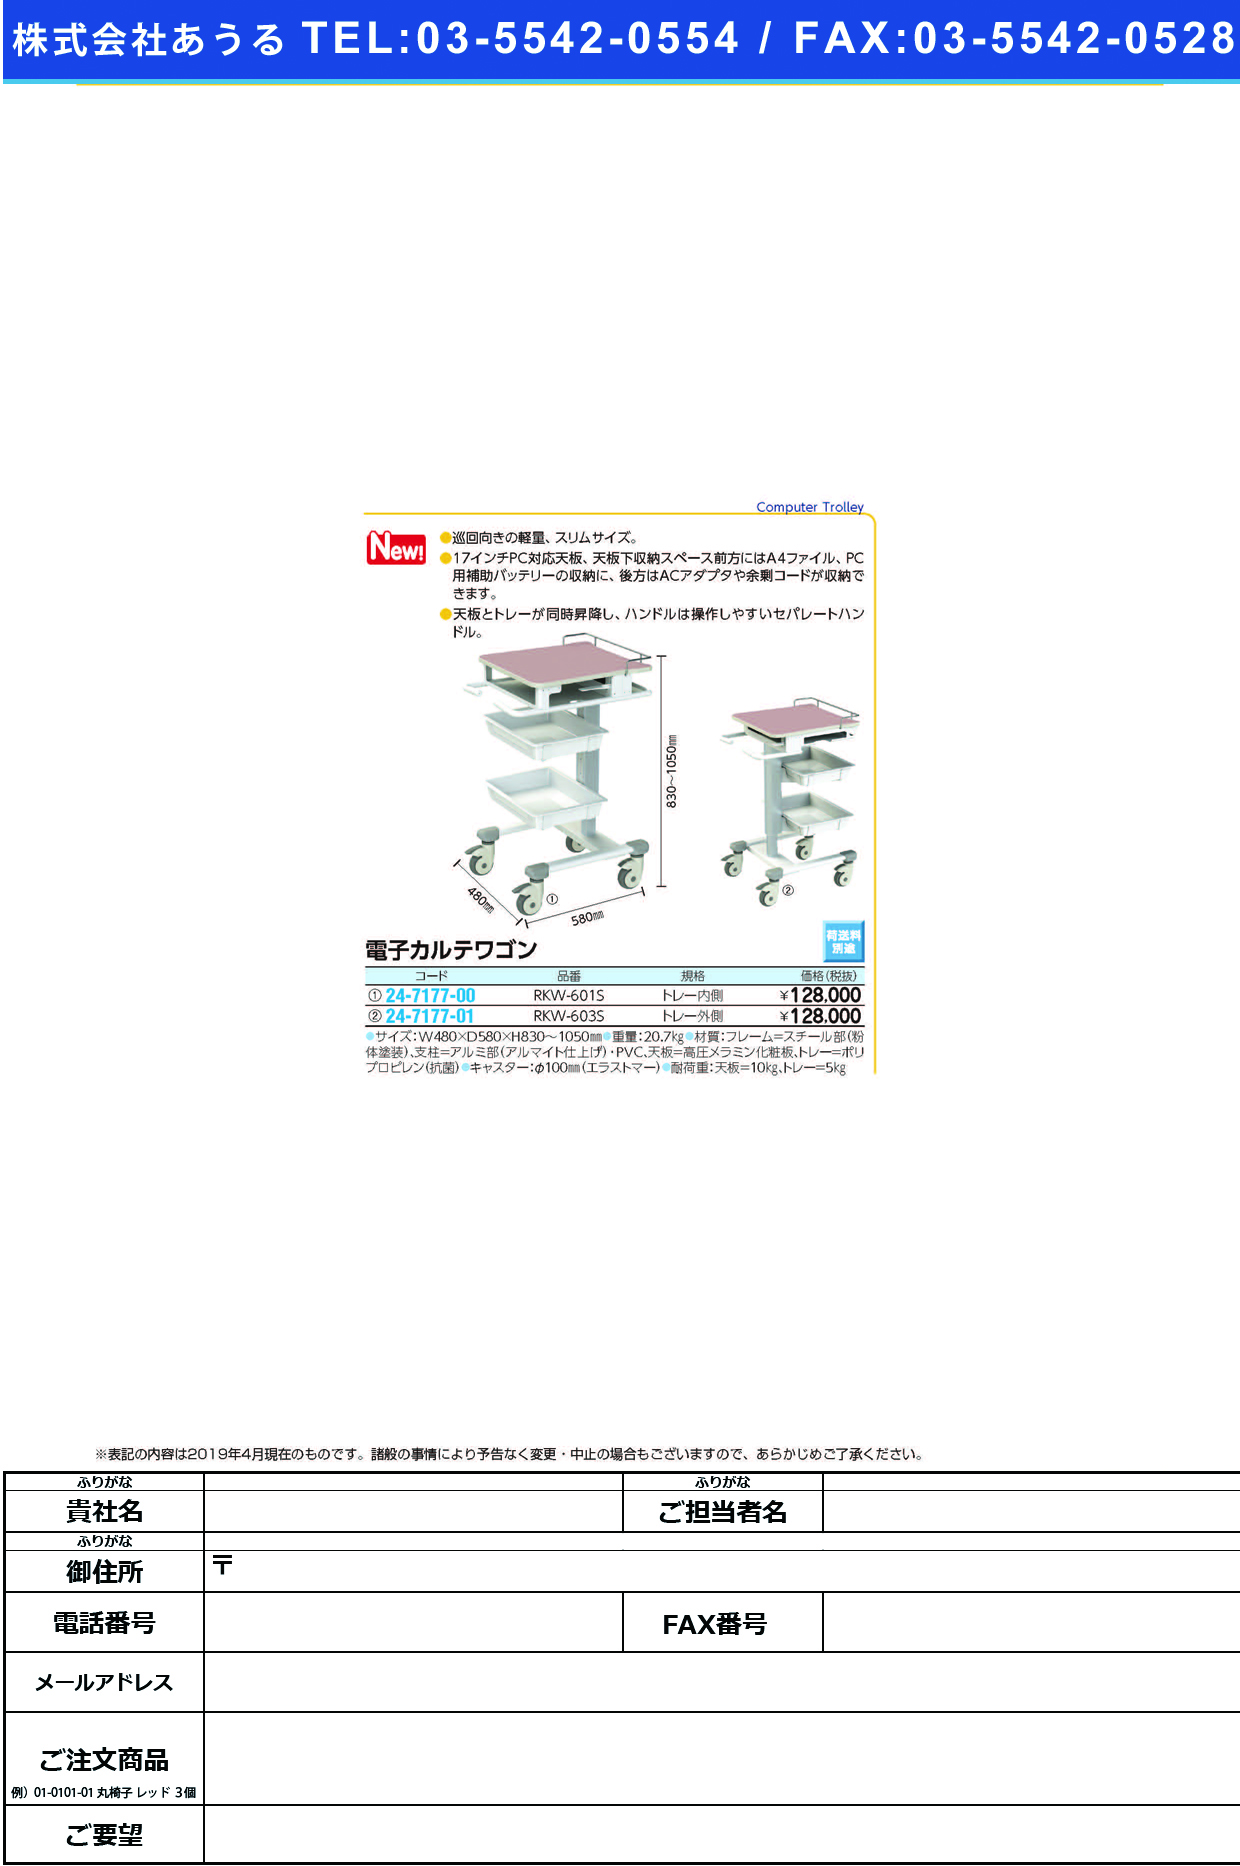 (24-7177-01)電子カルテワゴンRKW-603S ﾃﾞﾝｼｶﾙﾃﾜｺﾞﾝ(ナカバヤシ)【1台単位】【2019年カタログ商品】